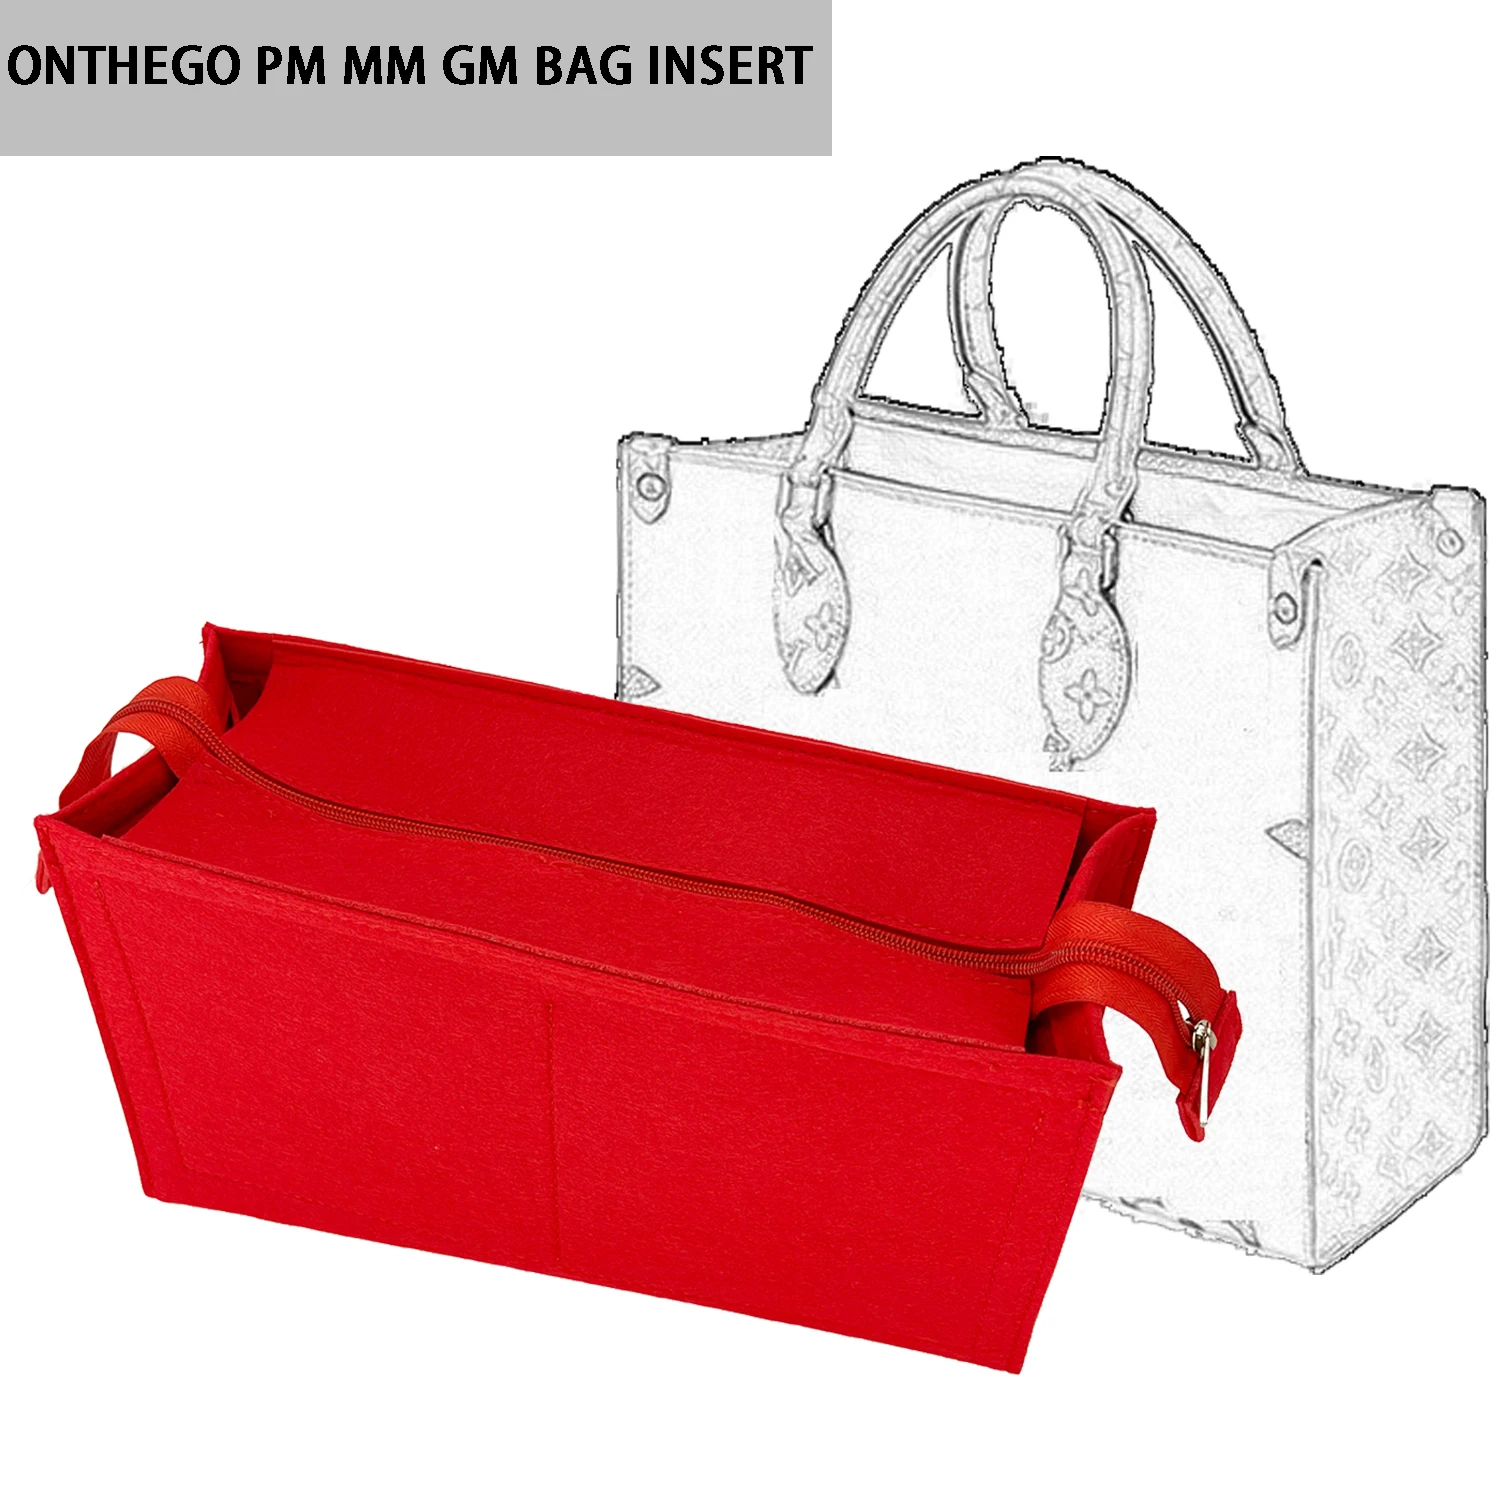 

Banbeln Onthego PM MM GM Органайзер для сумок, вставка для рюкзака, Большая внутренняя сумка в сумке YMX219